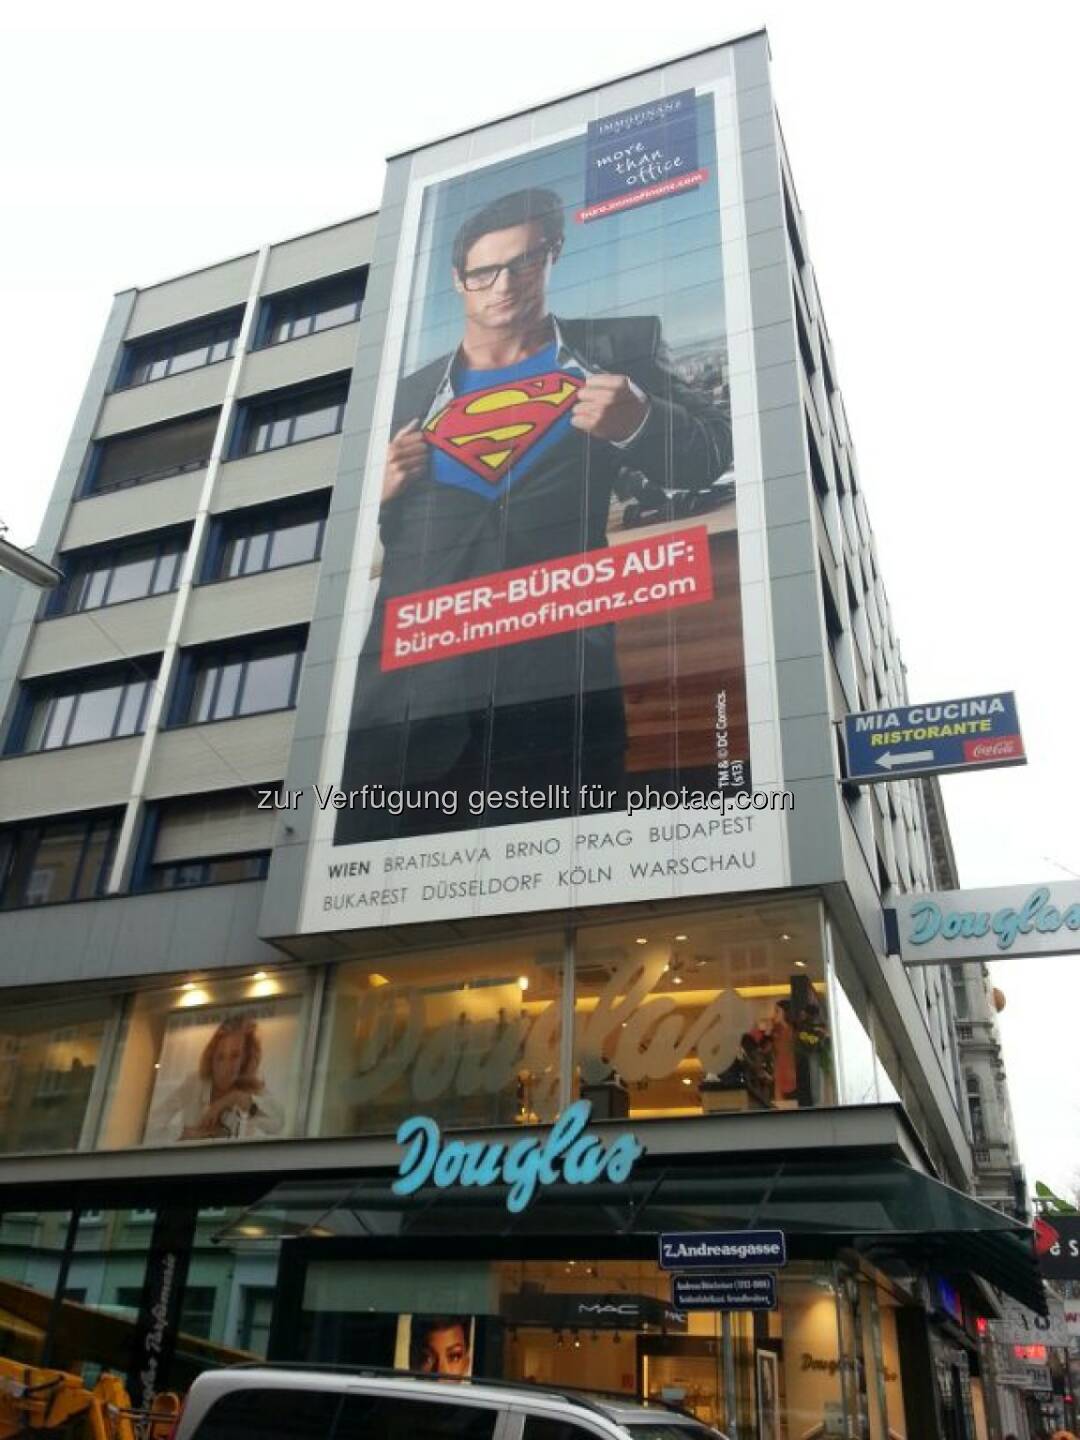 Immofinanz: Superman in der Andreasgasse,  mehr http://blog.immofinanz.com/de/2013/11/04/was-superman-an-der-immofinanz-schaetzt/